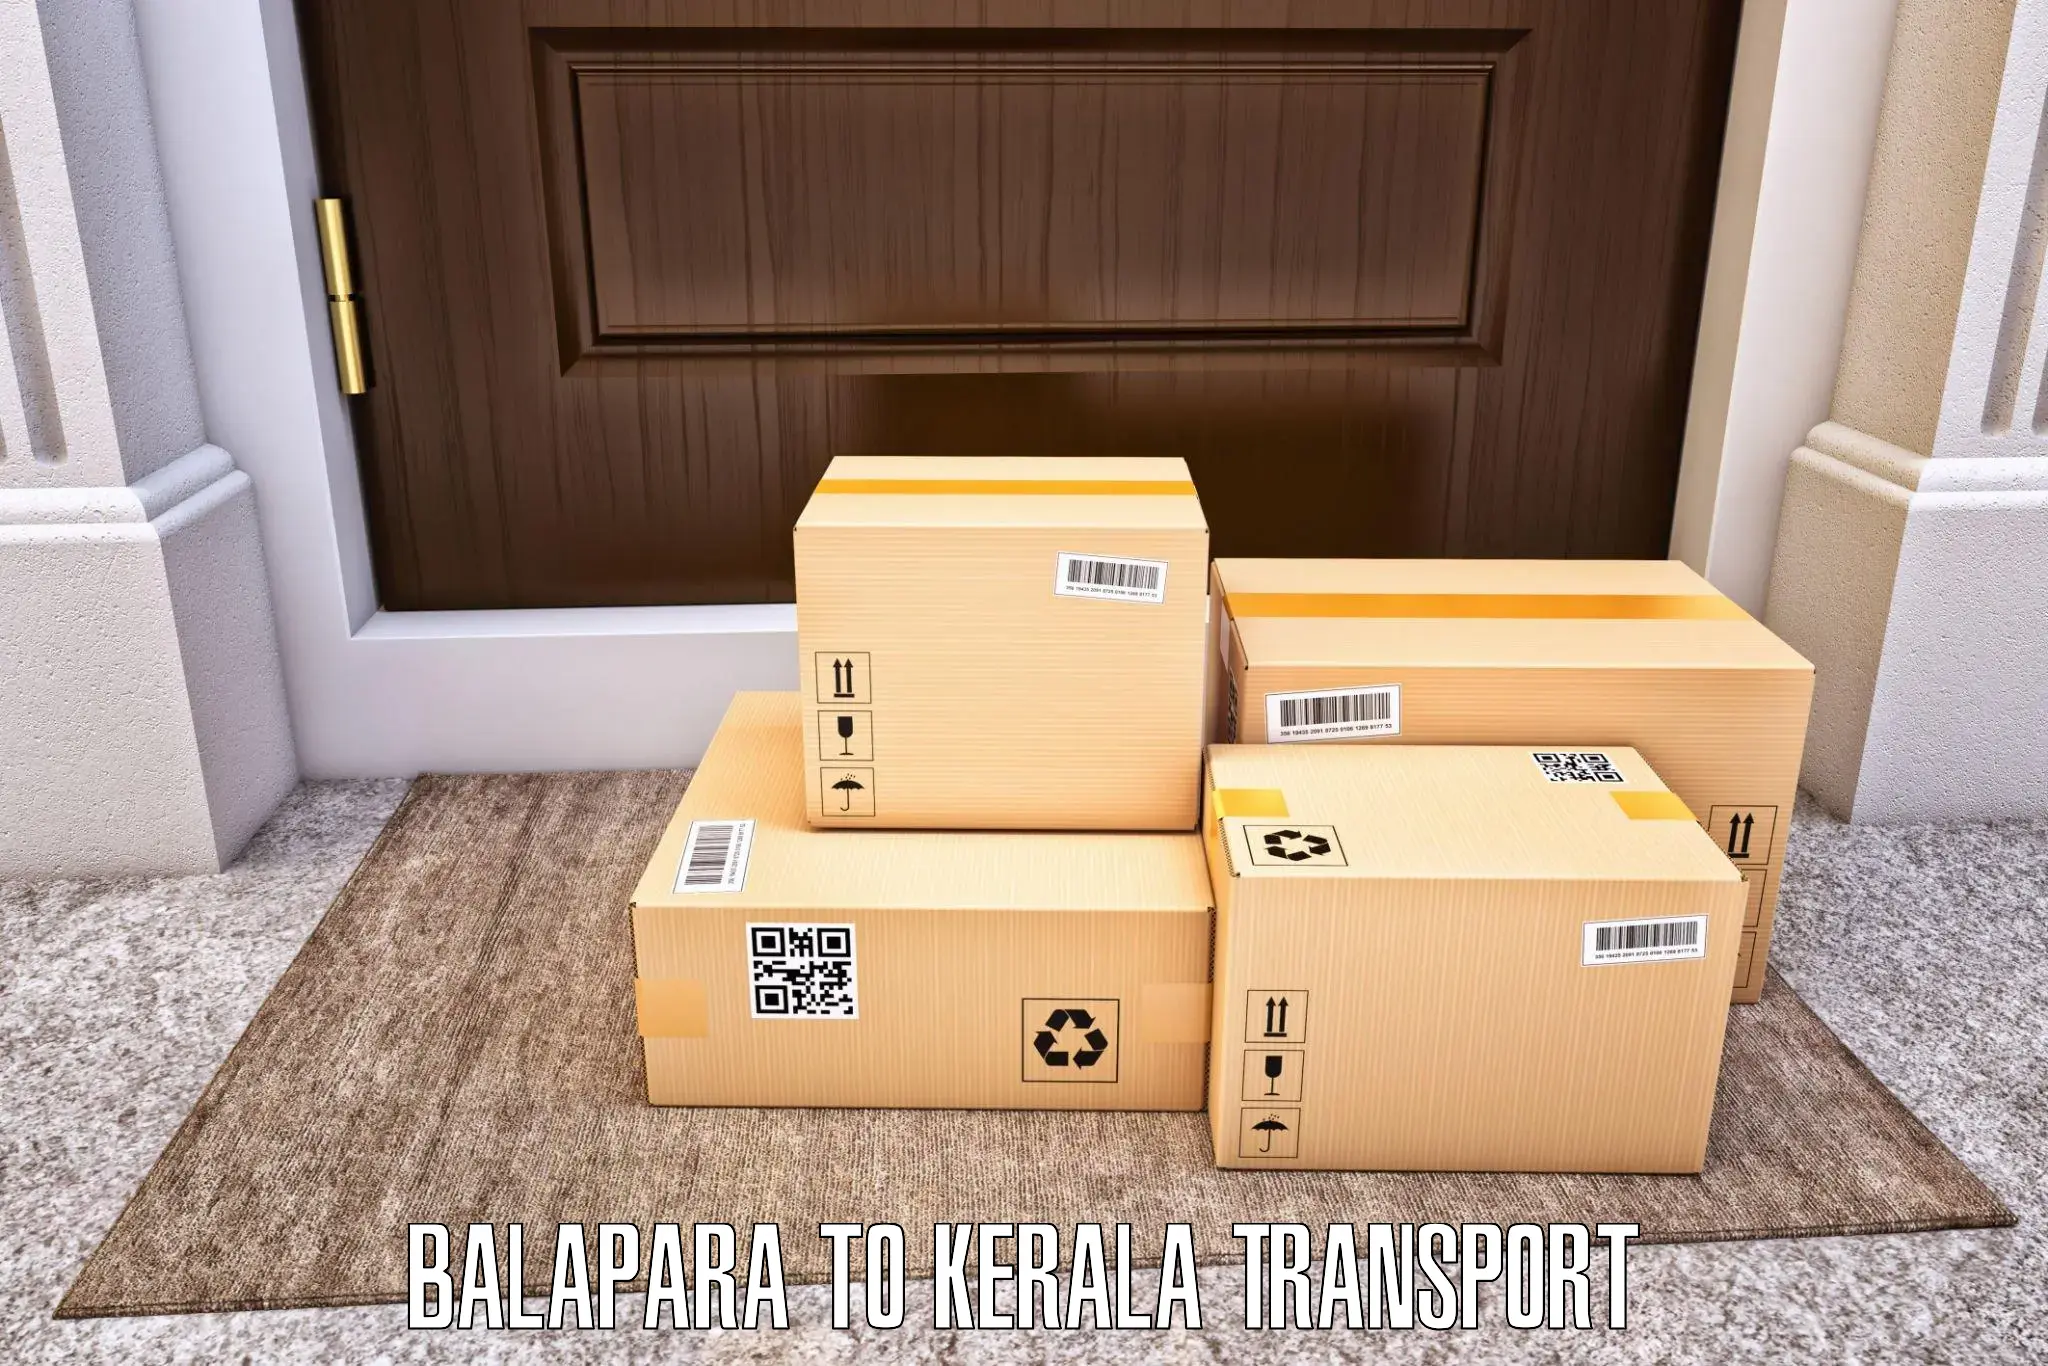 Land transport services Balapara to Manjeshwar